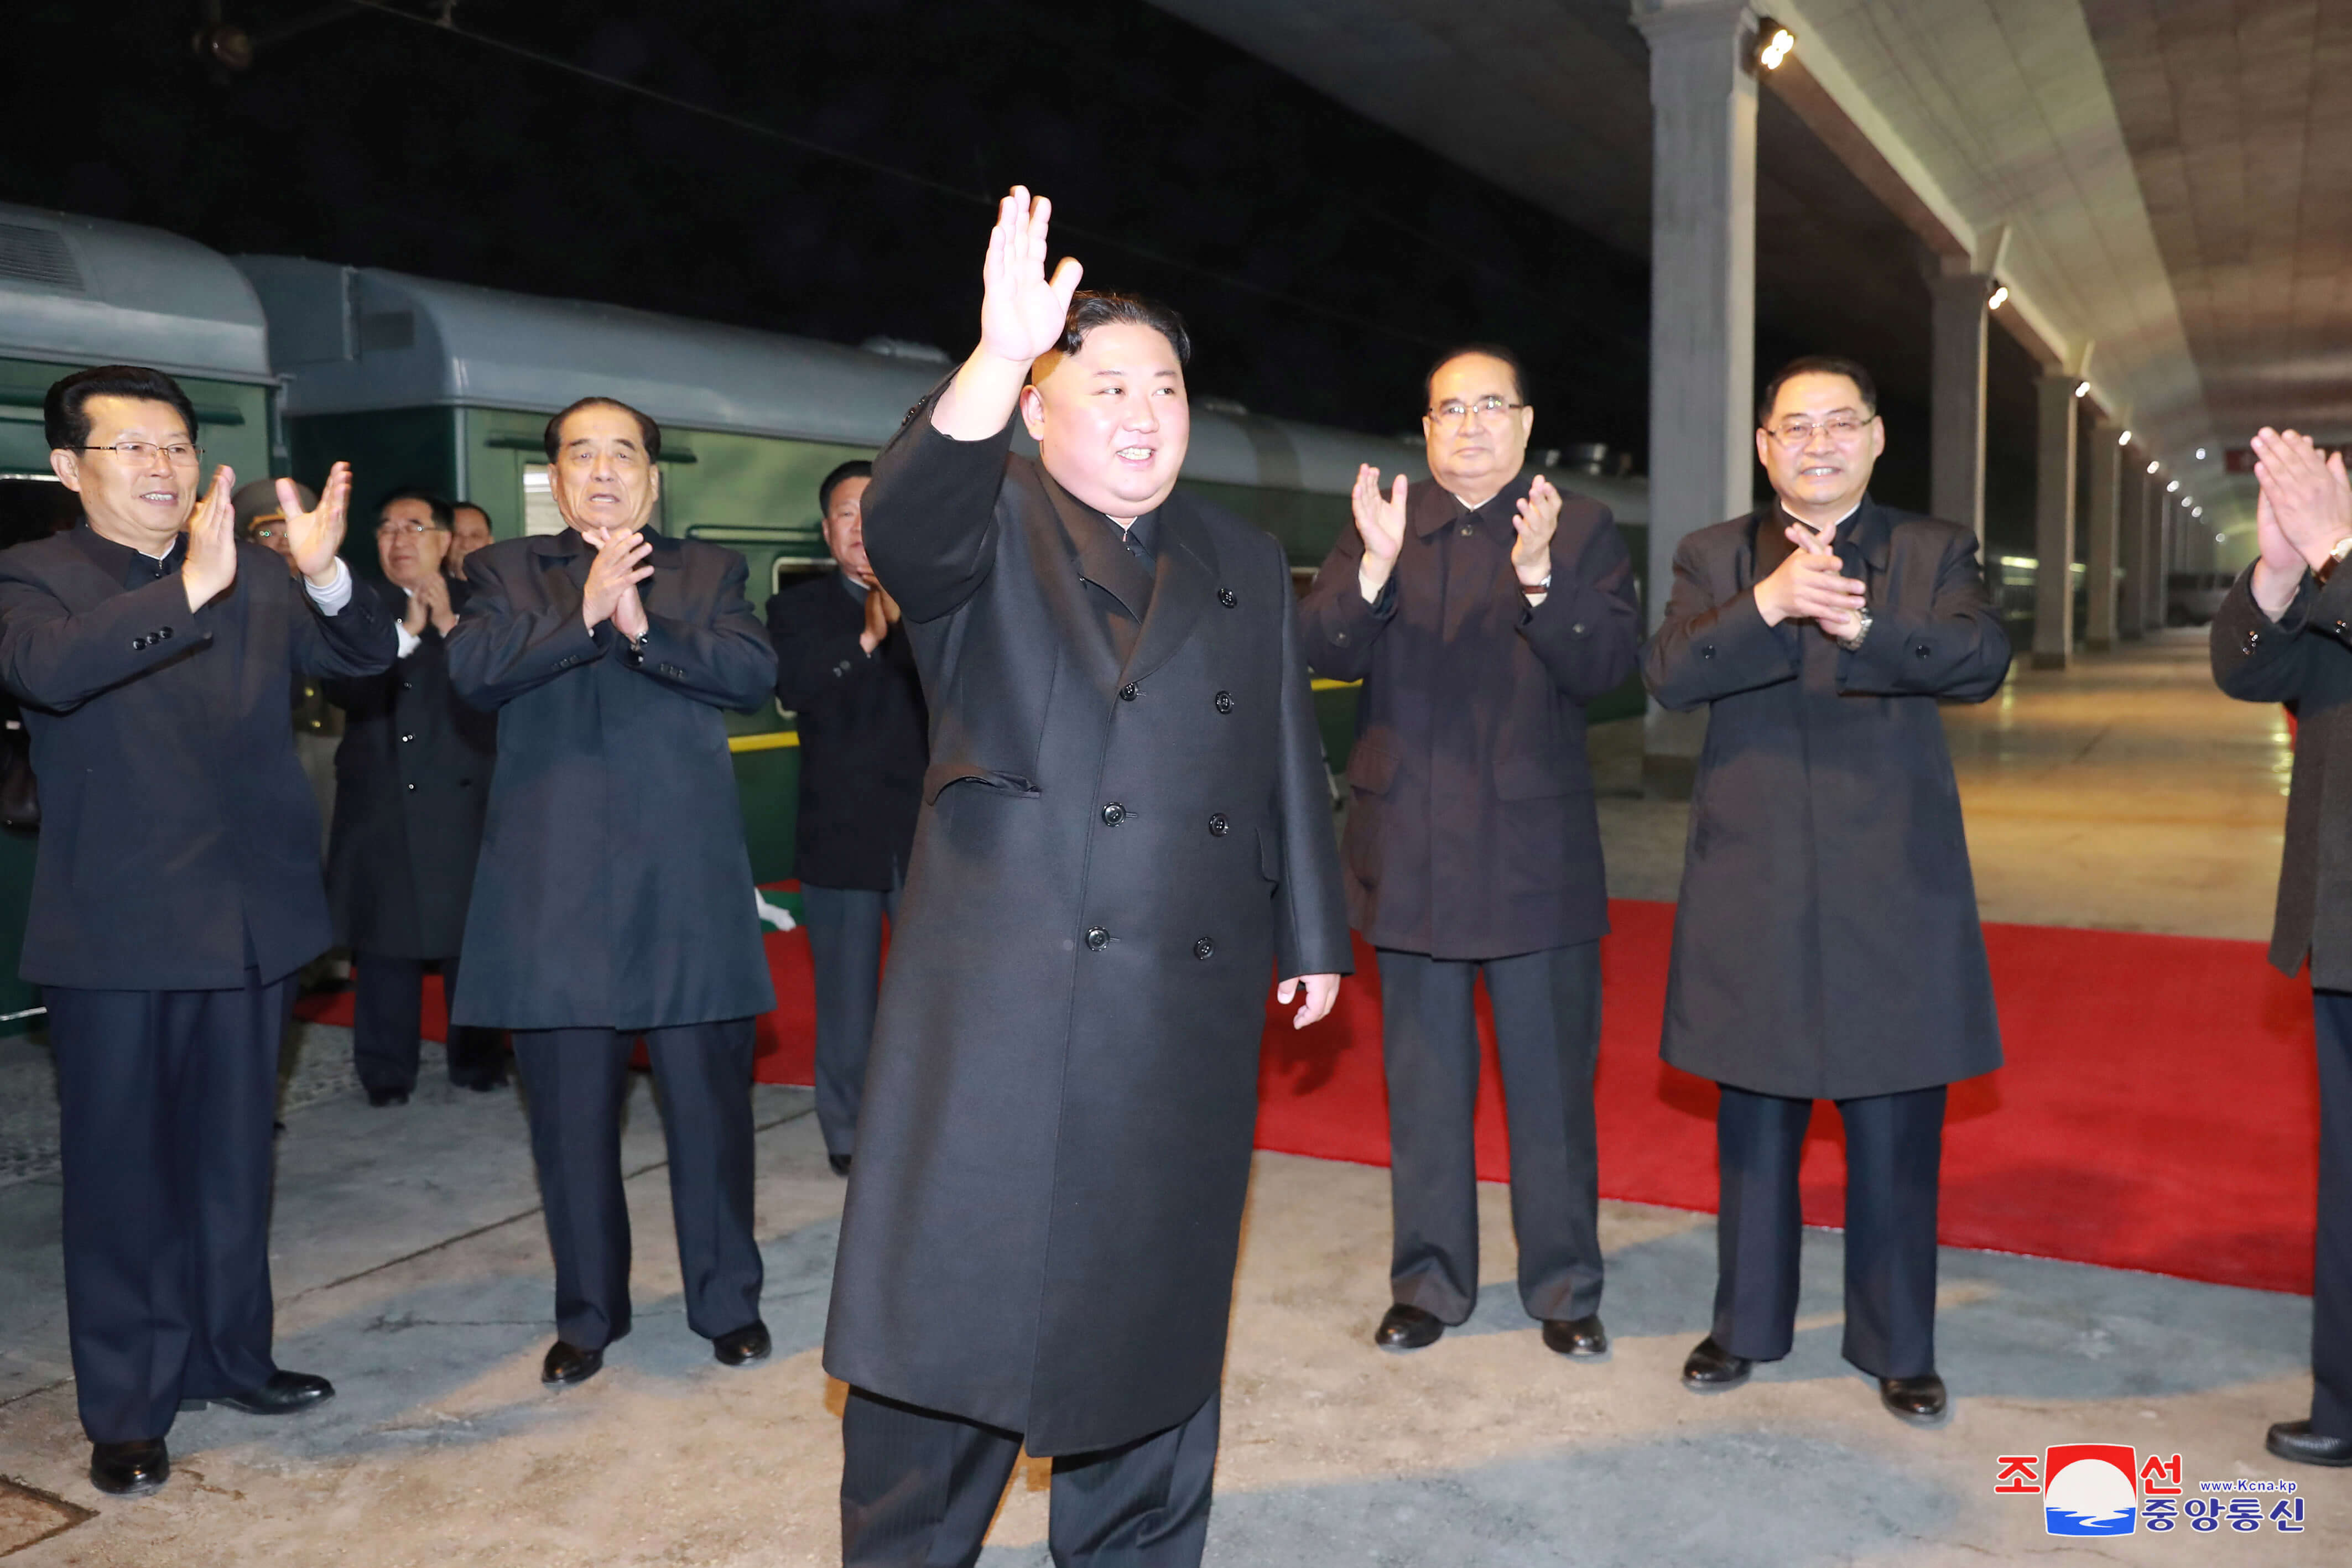 Foto: El líder norcoreano, Kim Jong-un, viaja en tren a Rusia. El 23 de abril de 2019